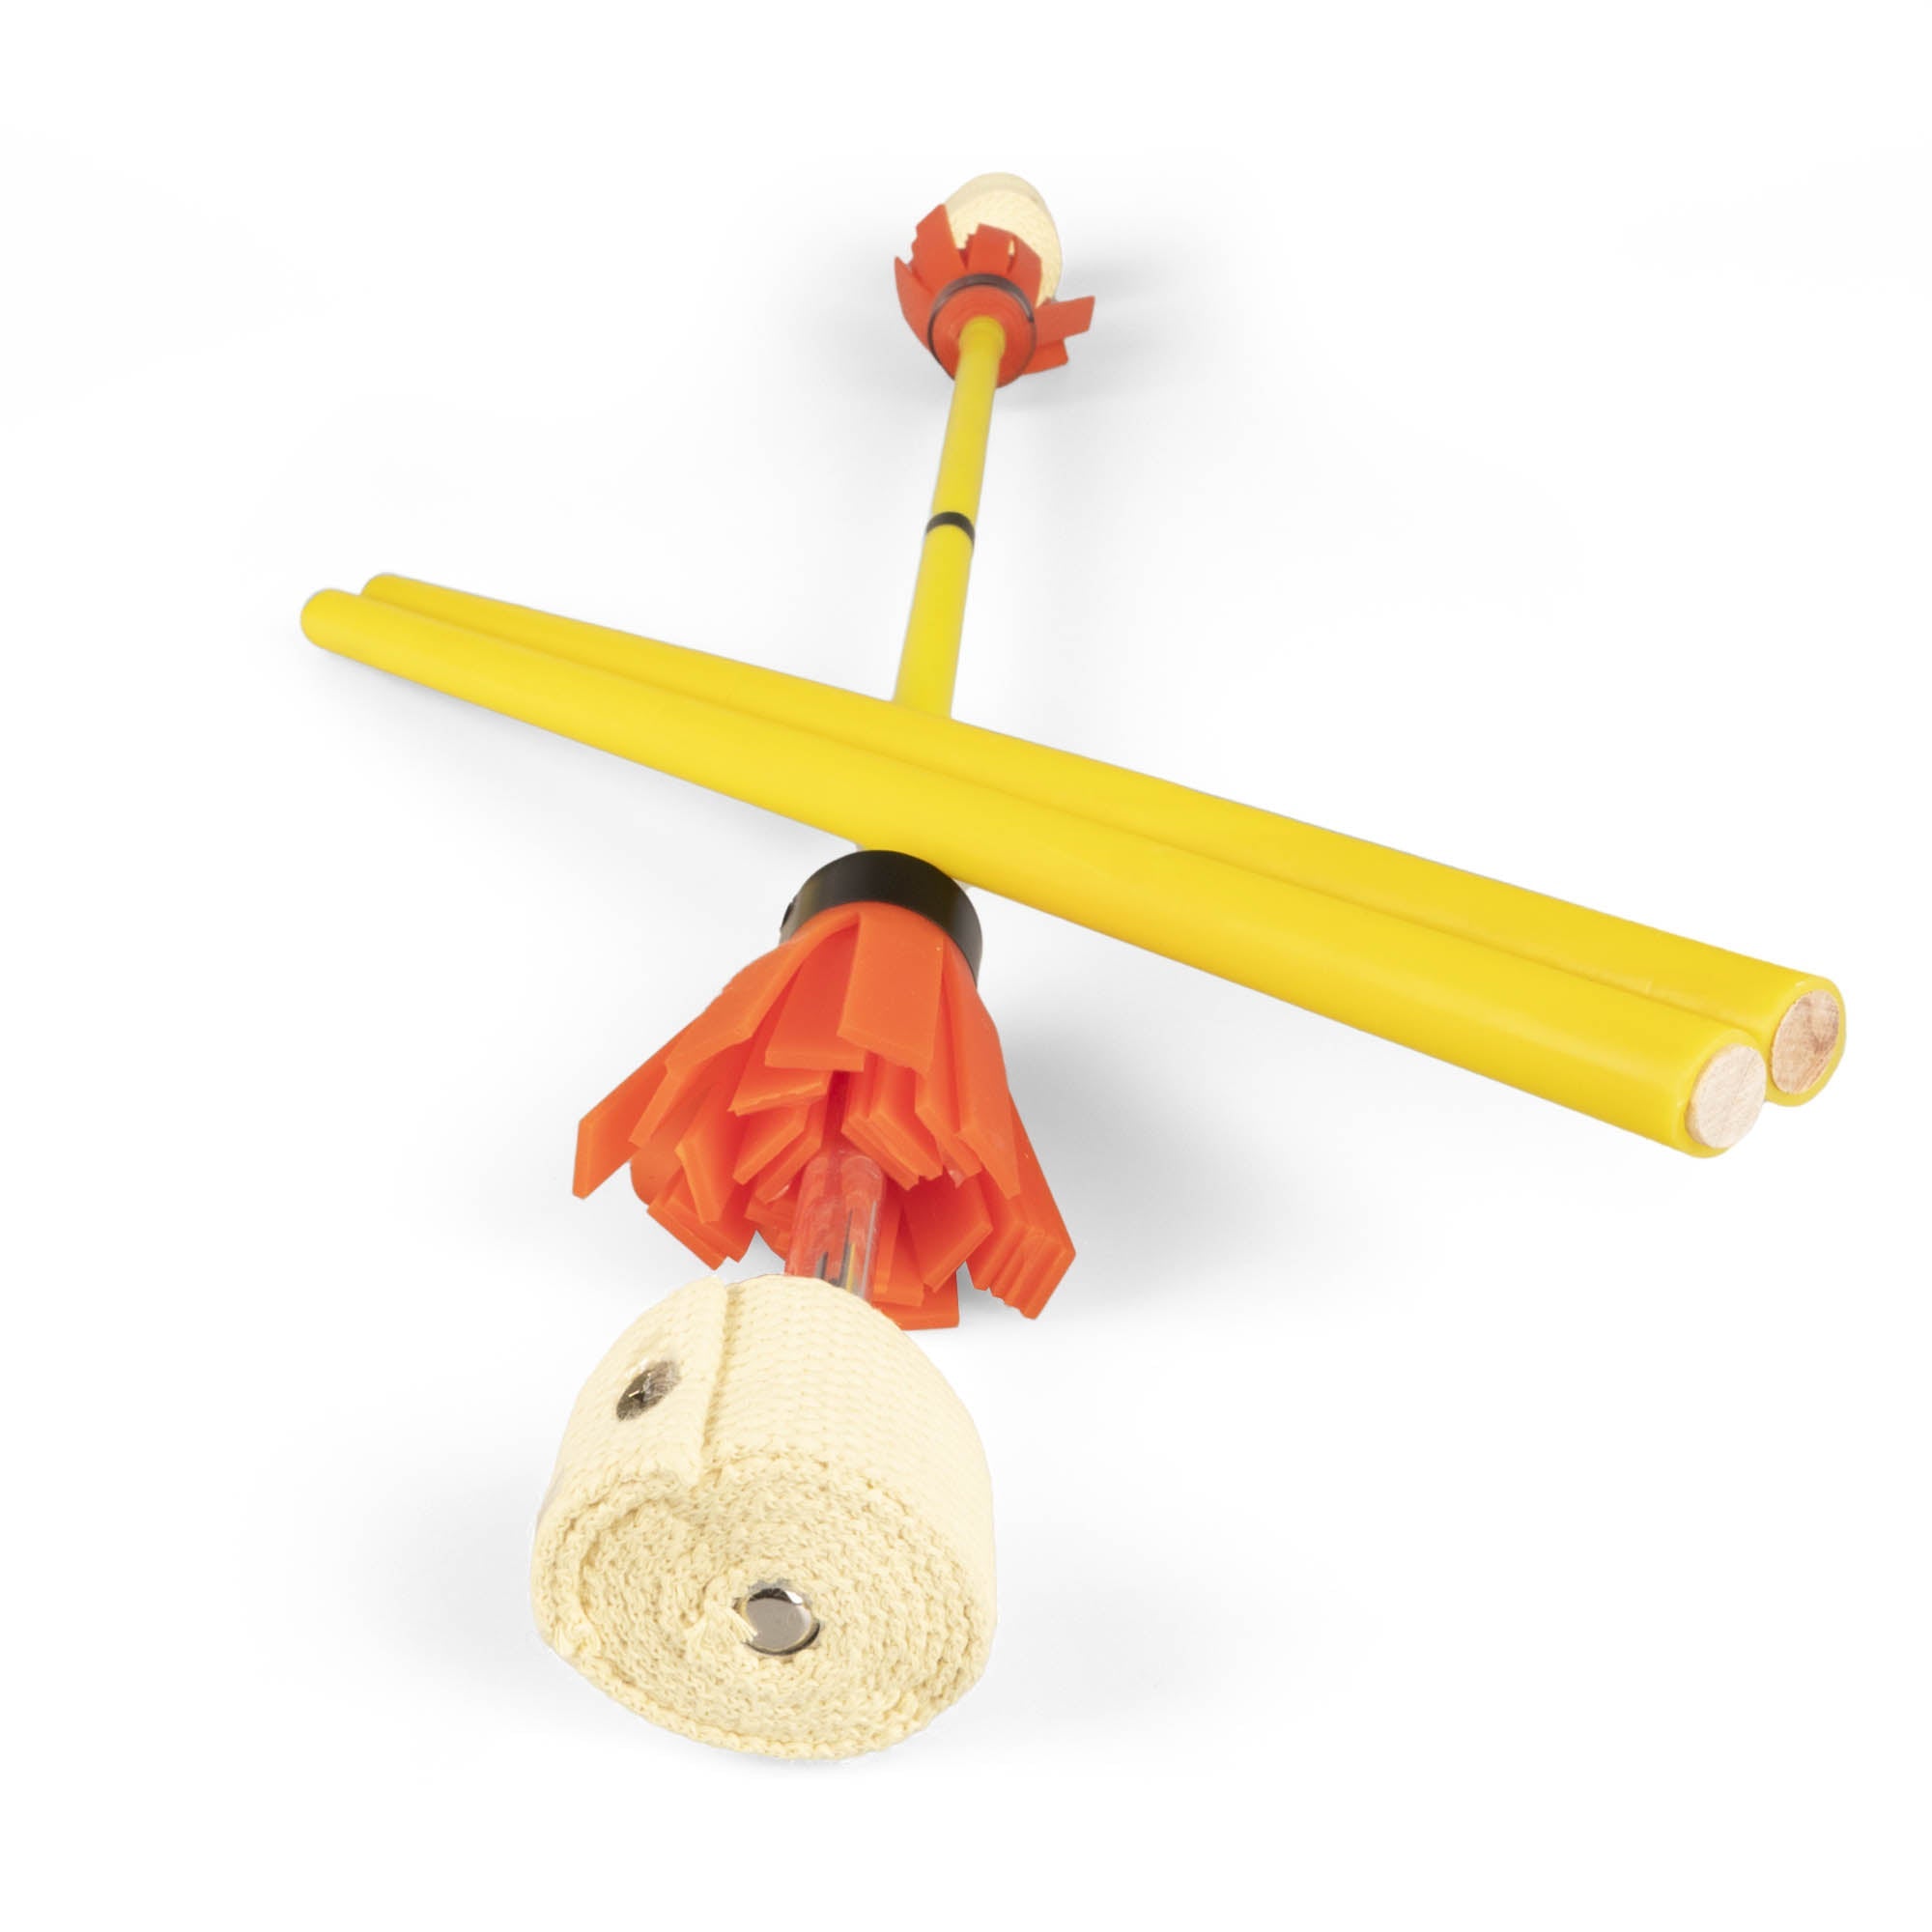 Juggle dream fire flower stick, hand sticks resting on flowerstick